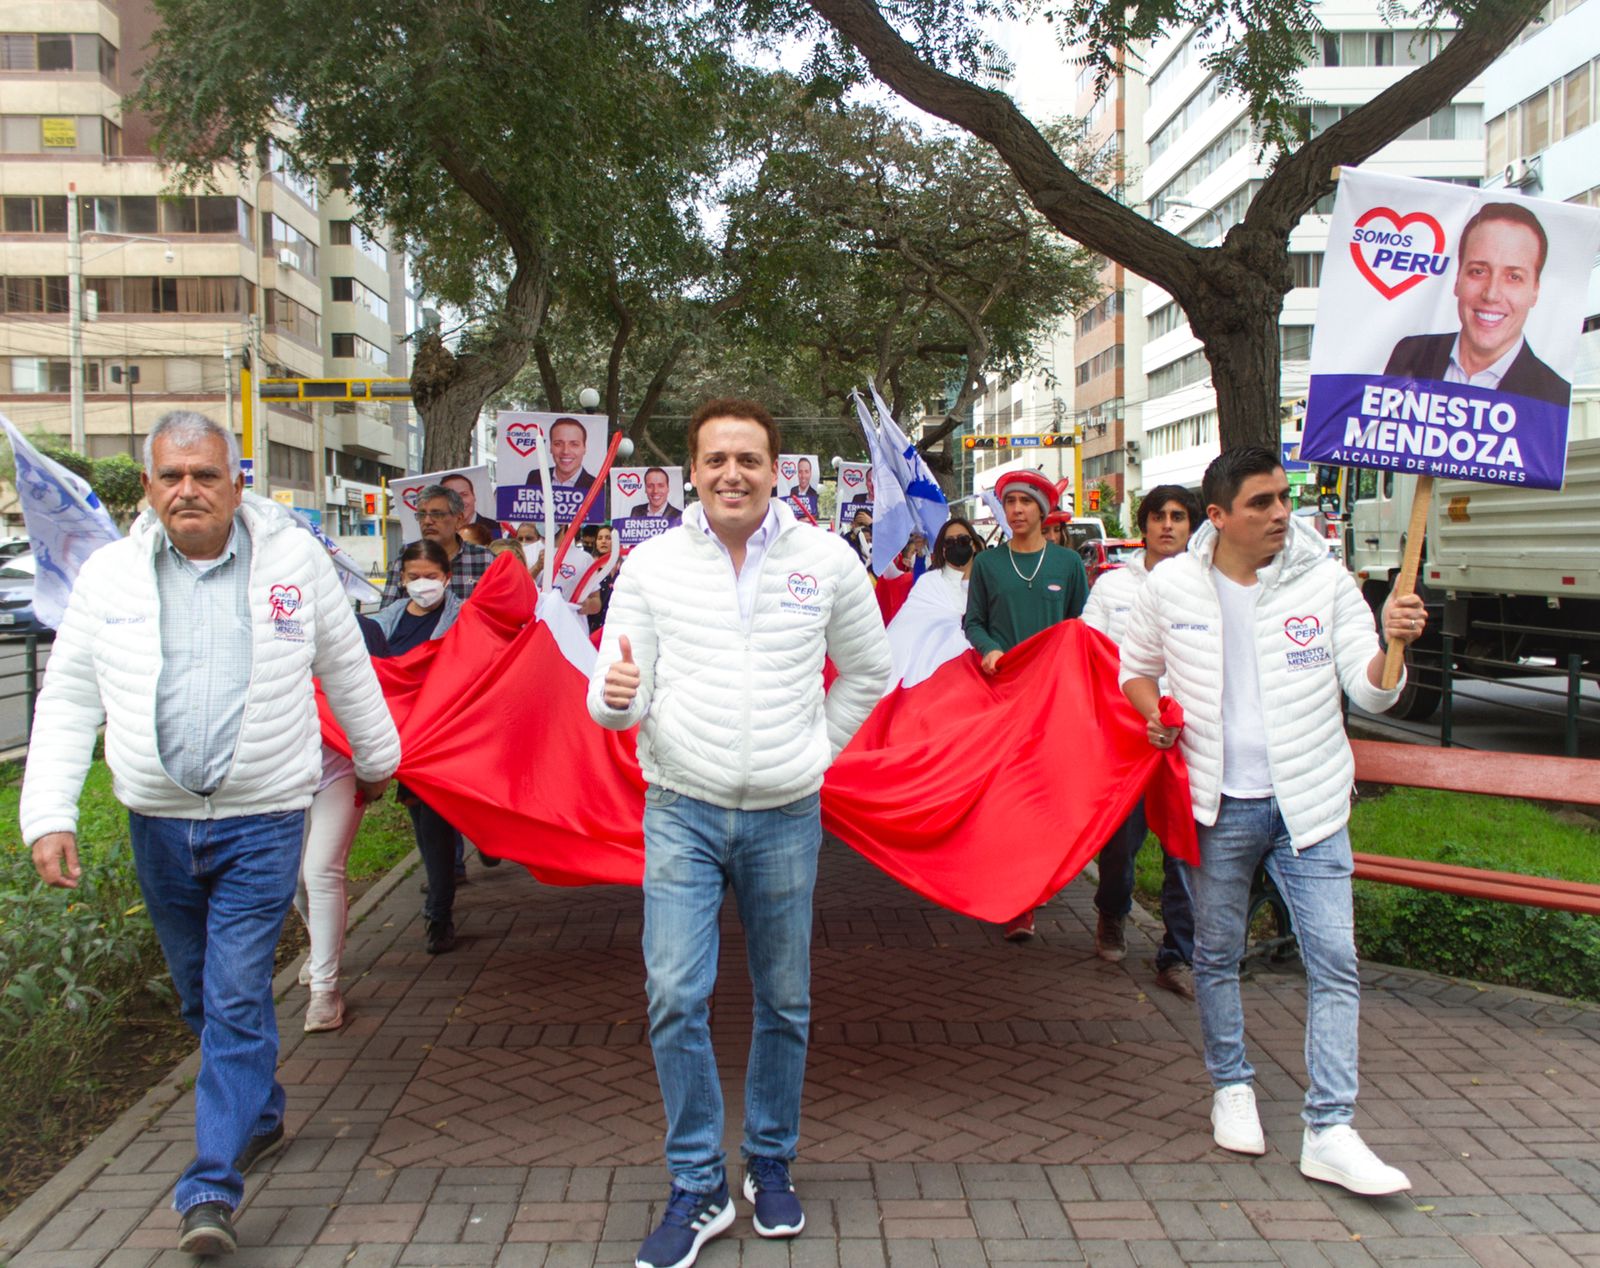 Miraflores: Ernesto Mendoza marcha por seguridad ciudadana